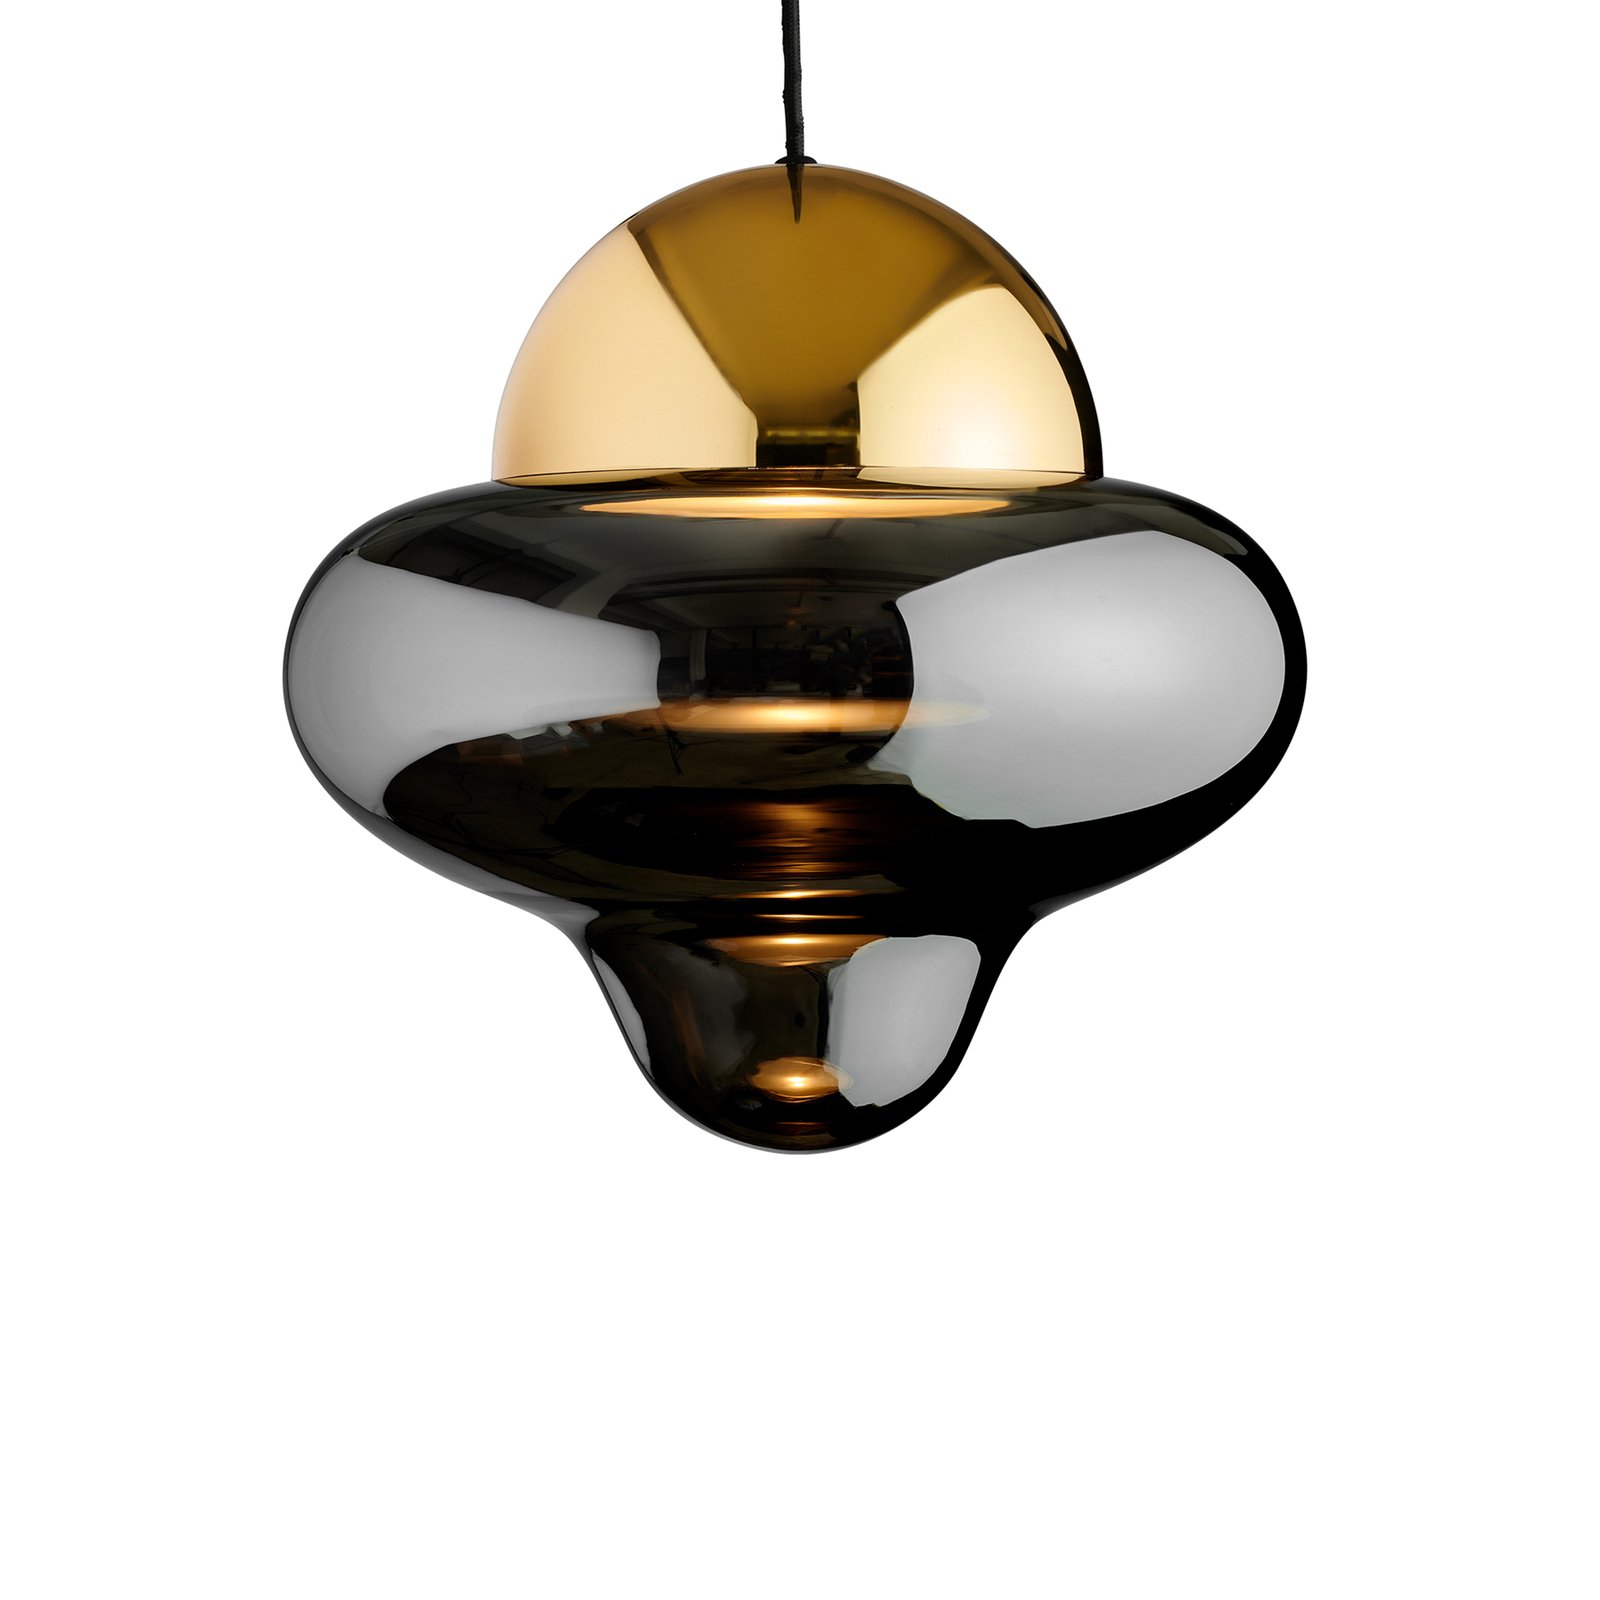 Hanglamp Nutty XL, rookgrijs/goudkleurig, Ø 30 cm